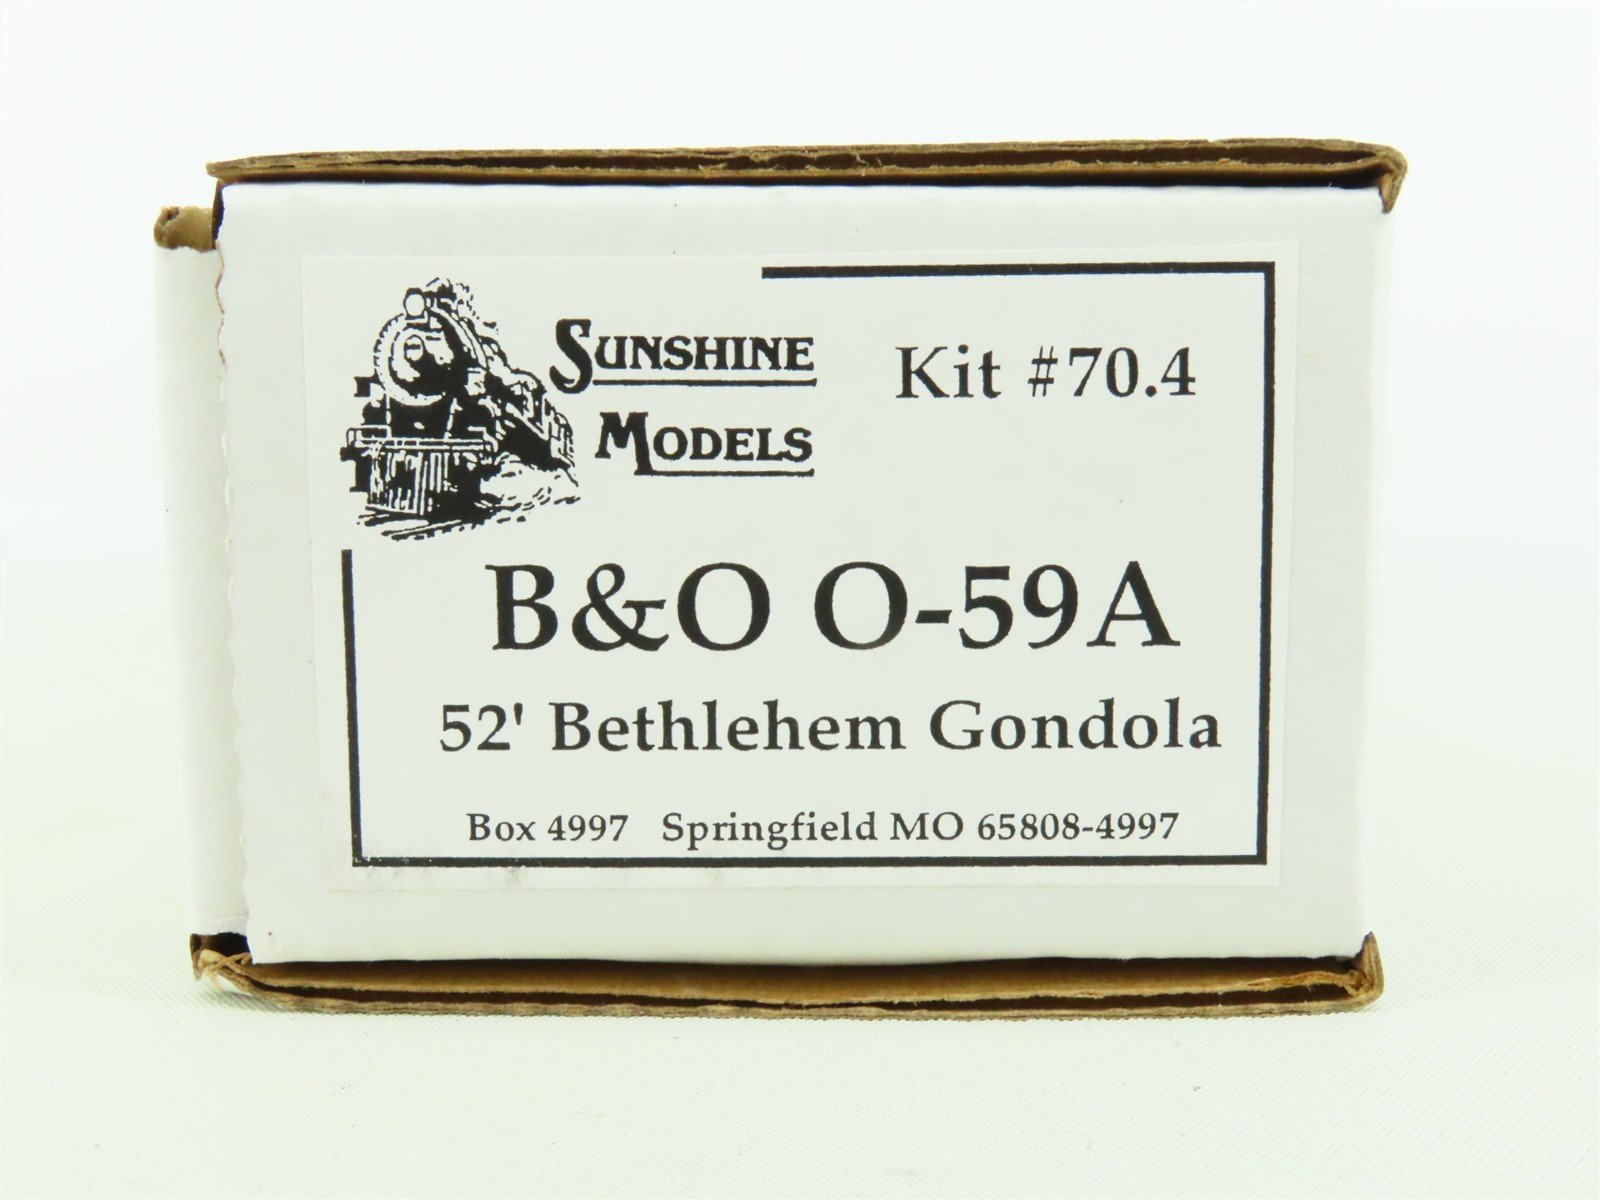 HO Sunshine Models Kit 70.4 B&O Baltimore & Ohio 52' Bethlehem Gondola w/ Decals